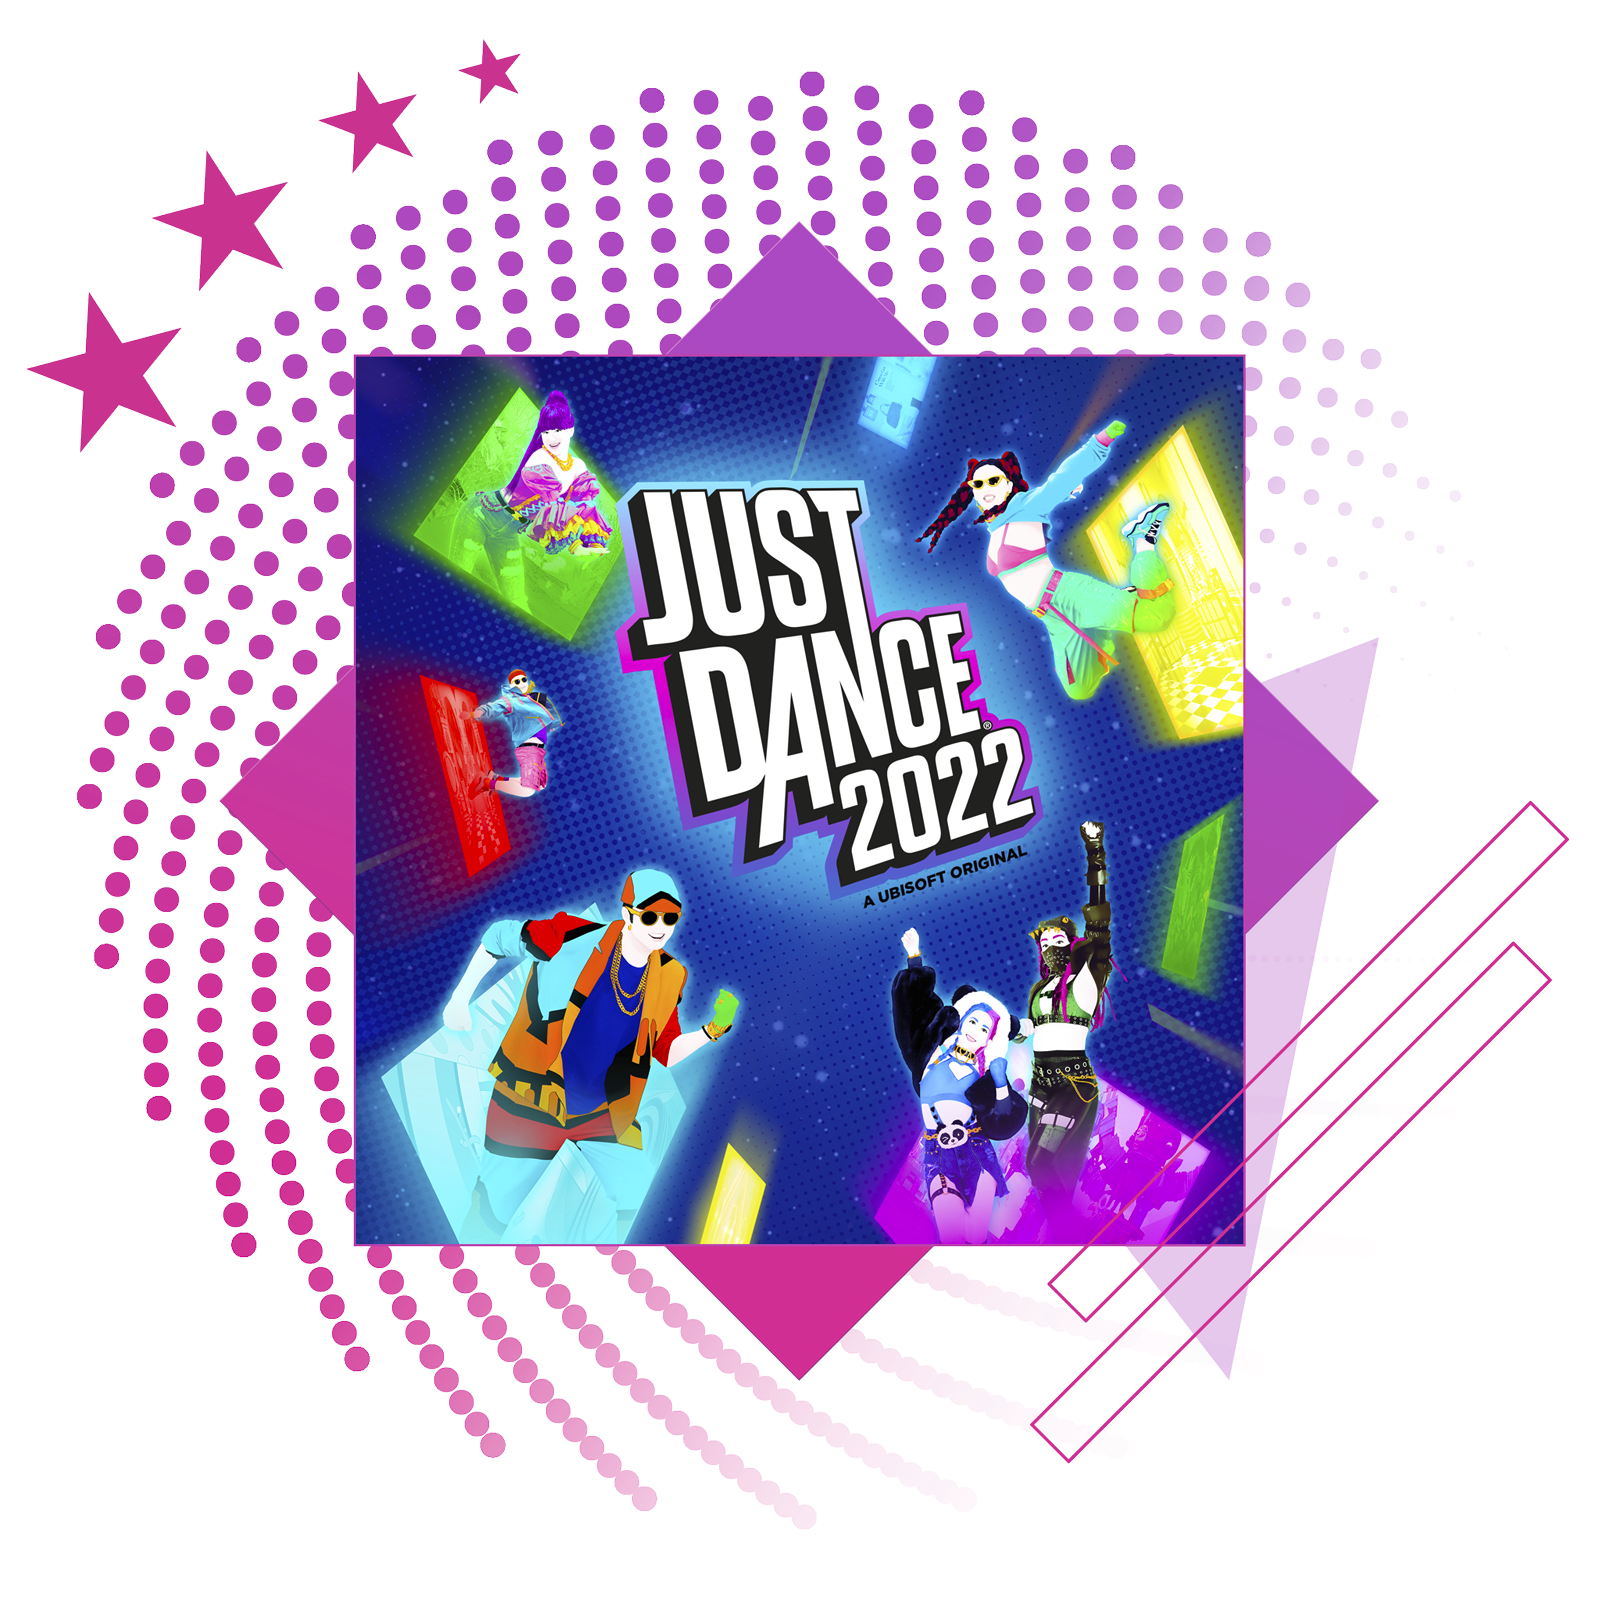 Най-добрите ритъм игри представят иконографско изображение от Just Dance 2022.